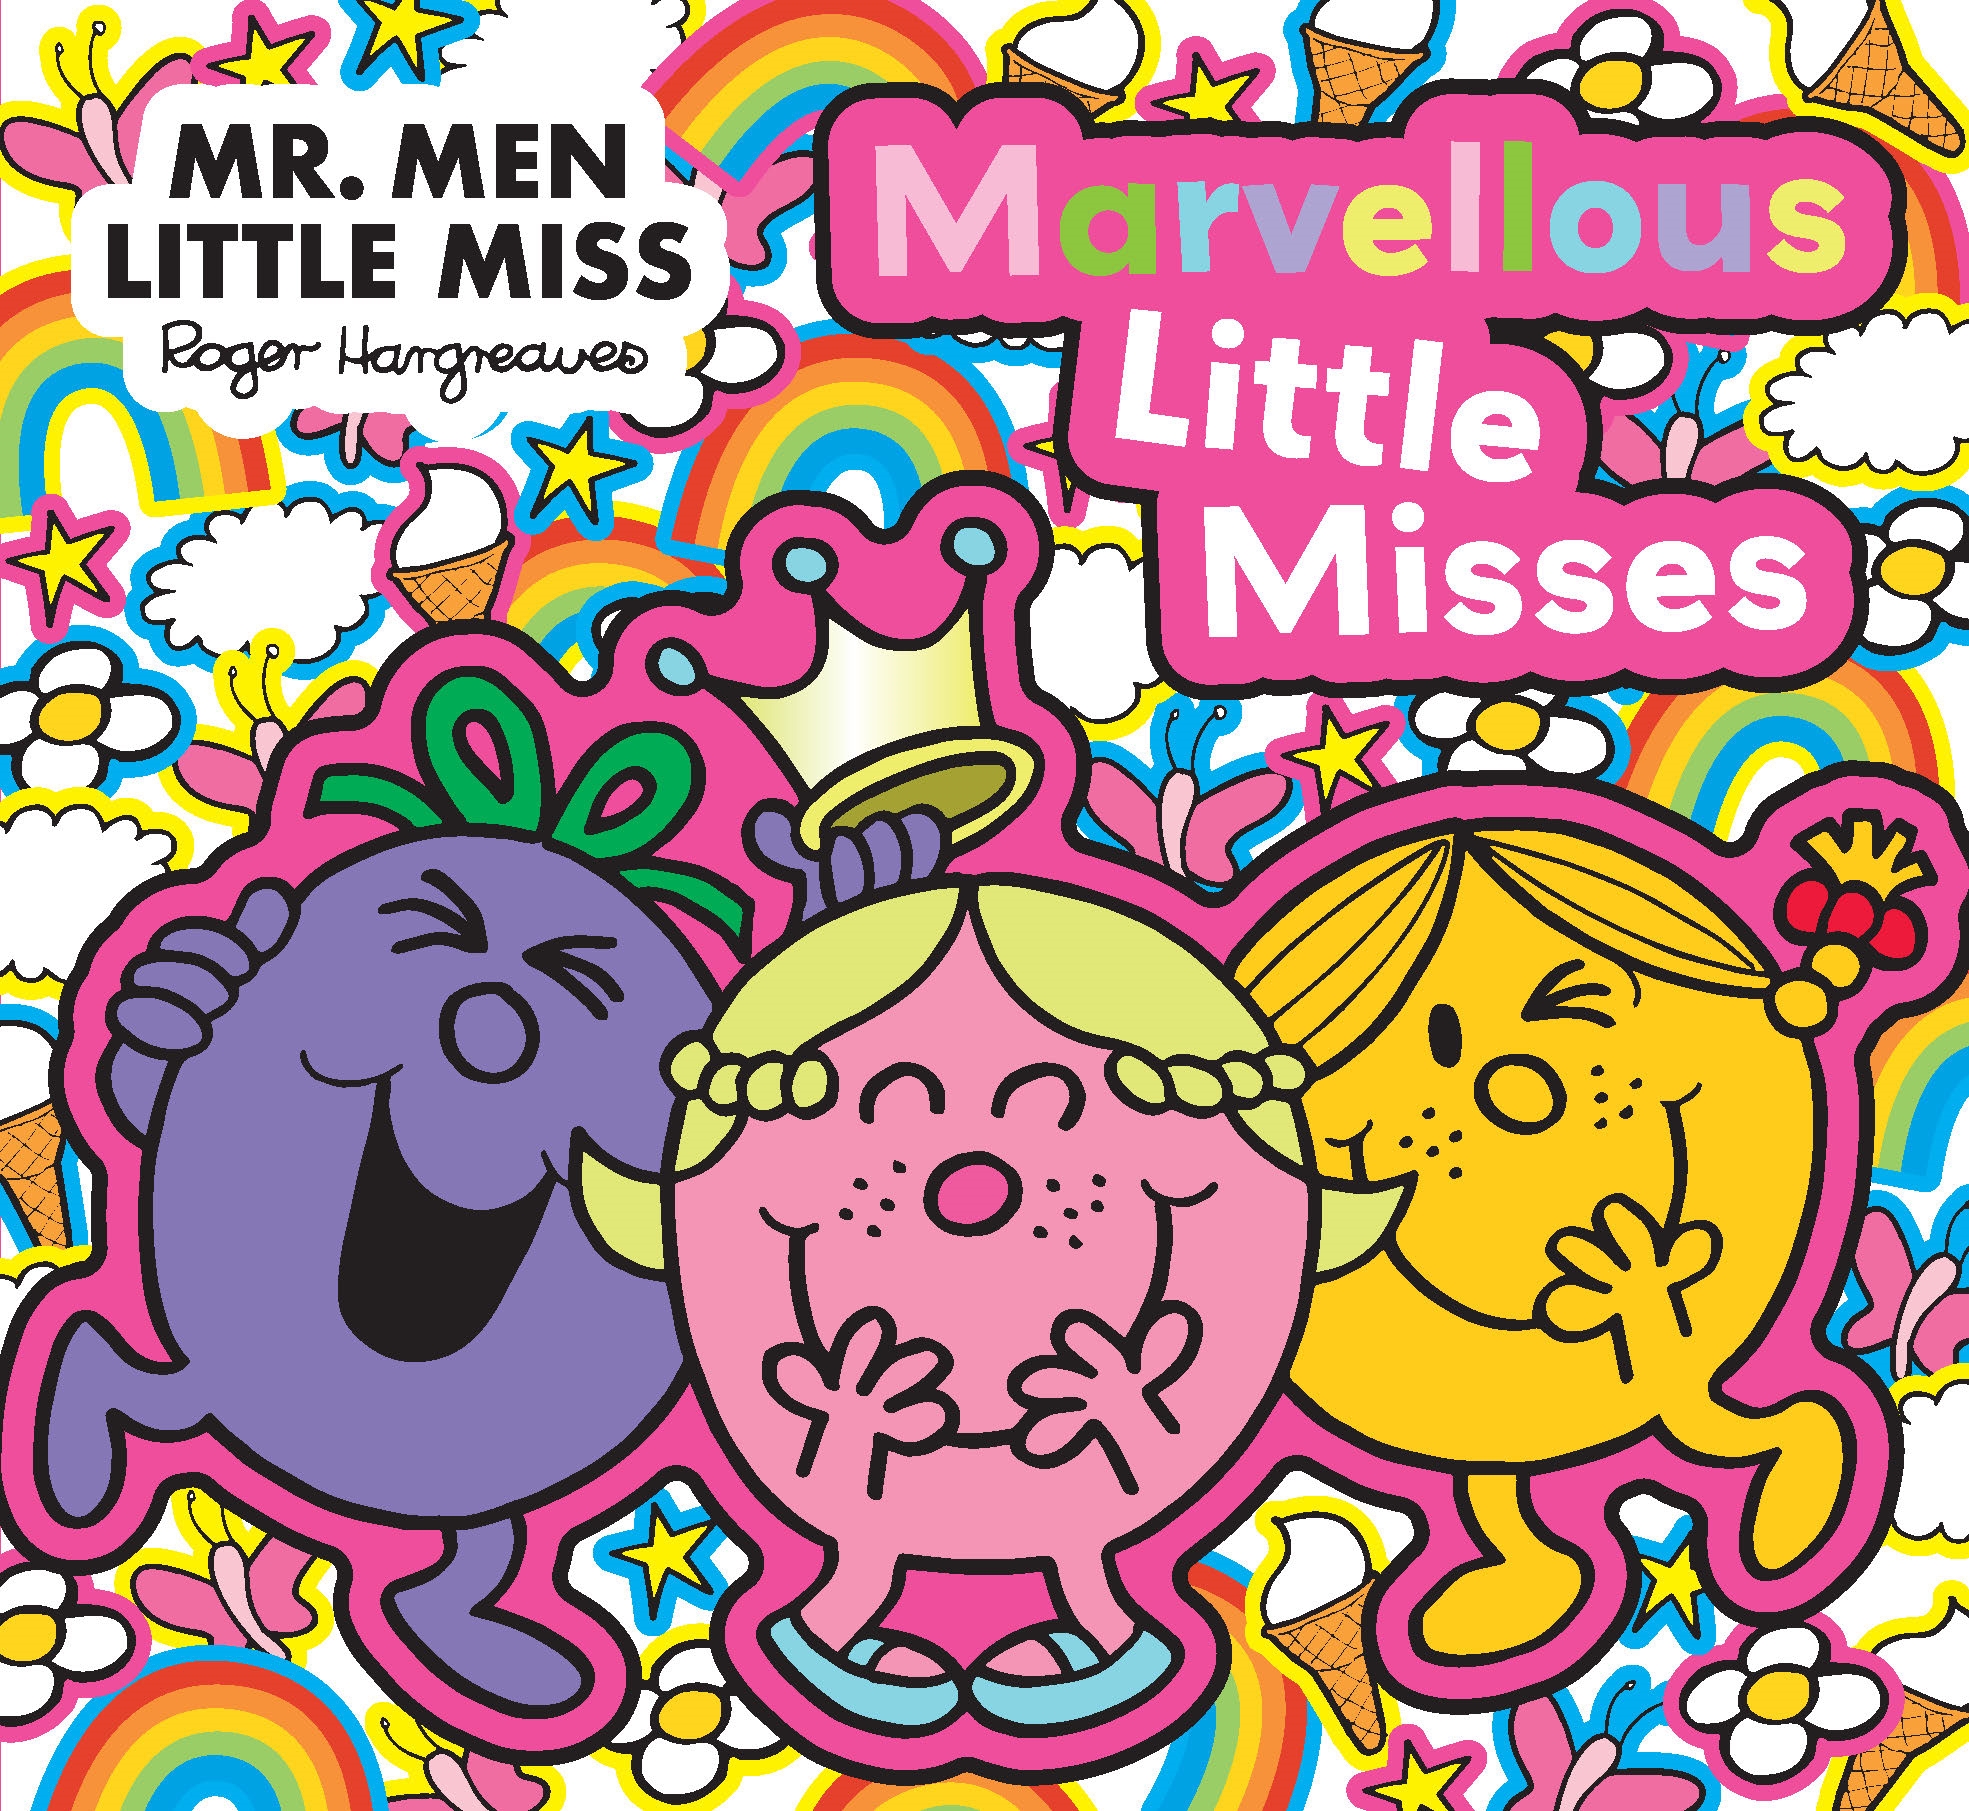 Mr Men Little Miss: Marvellous Little Misses by Roger Hargreaves ...